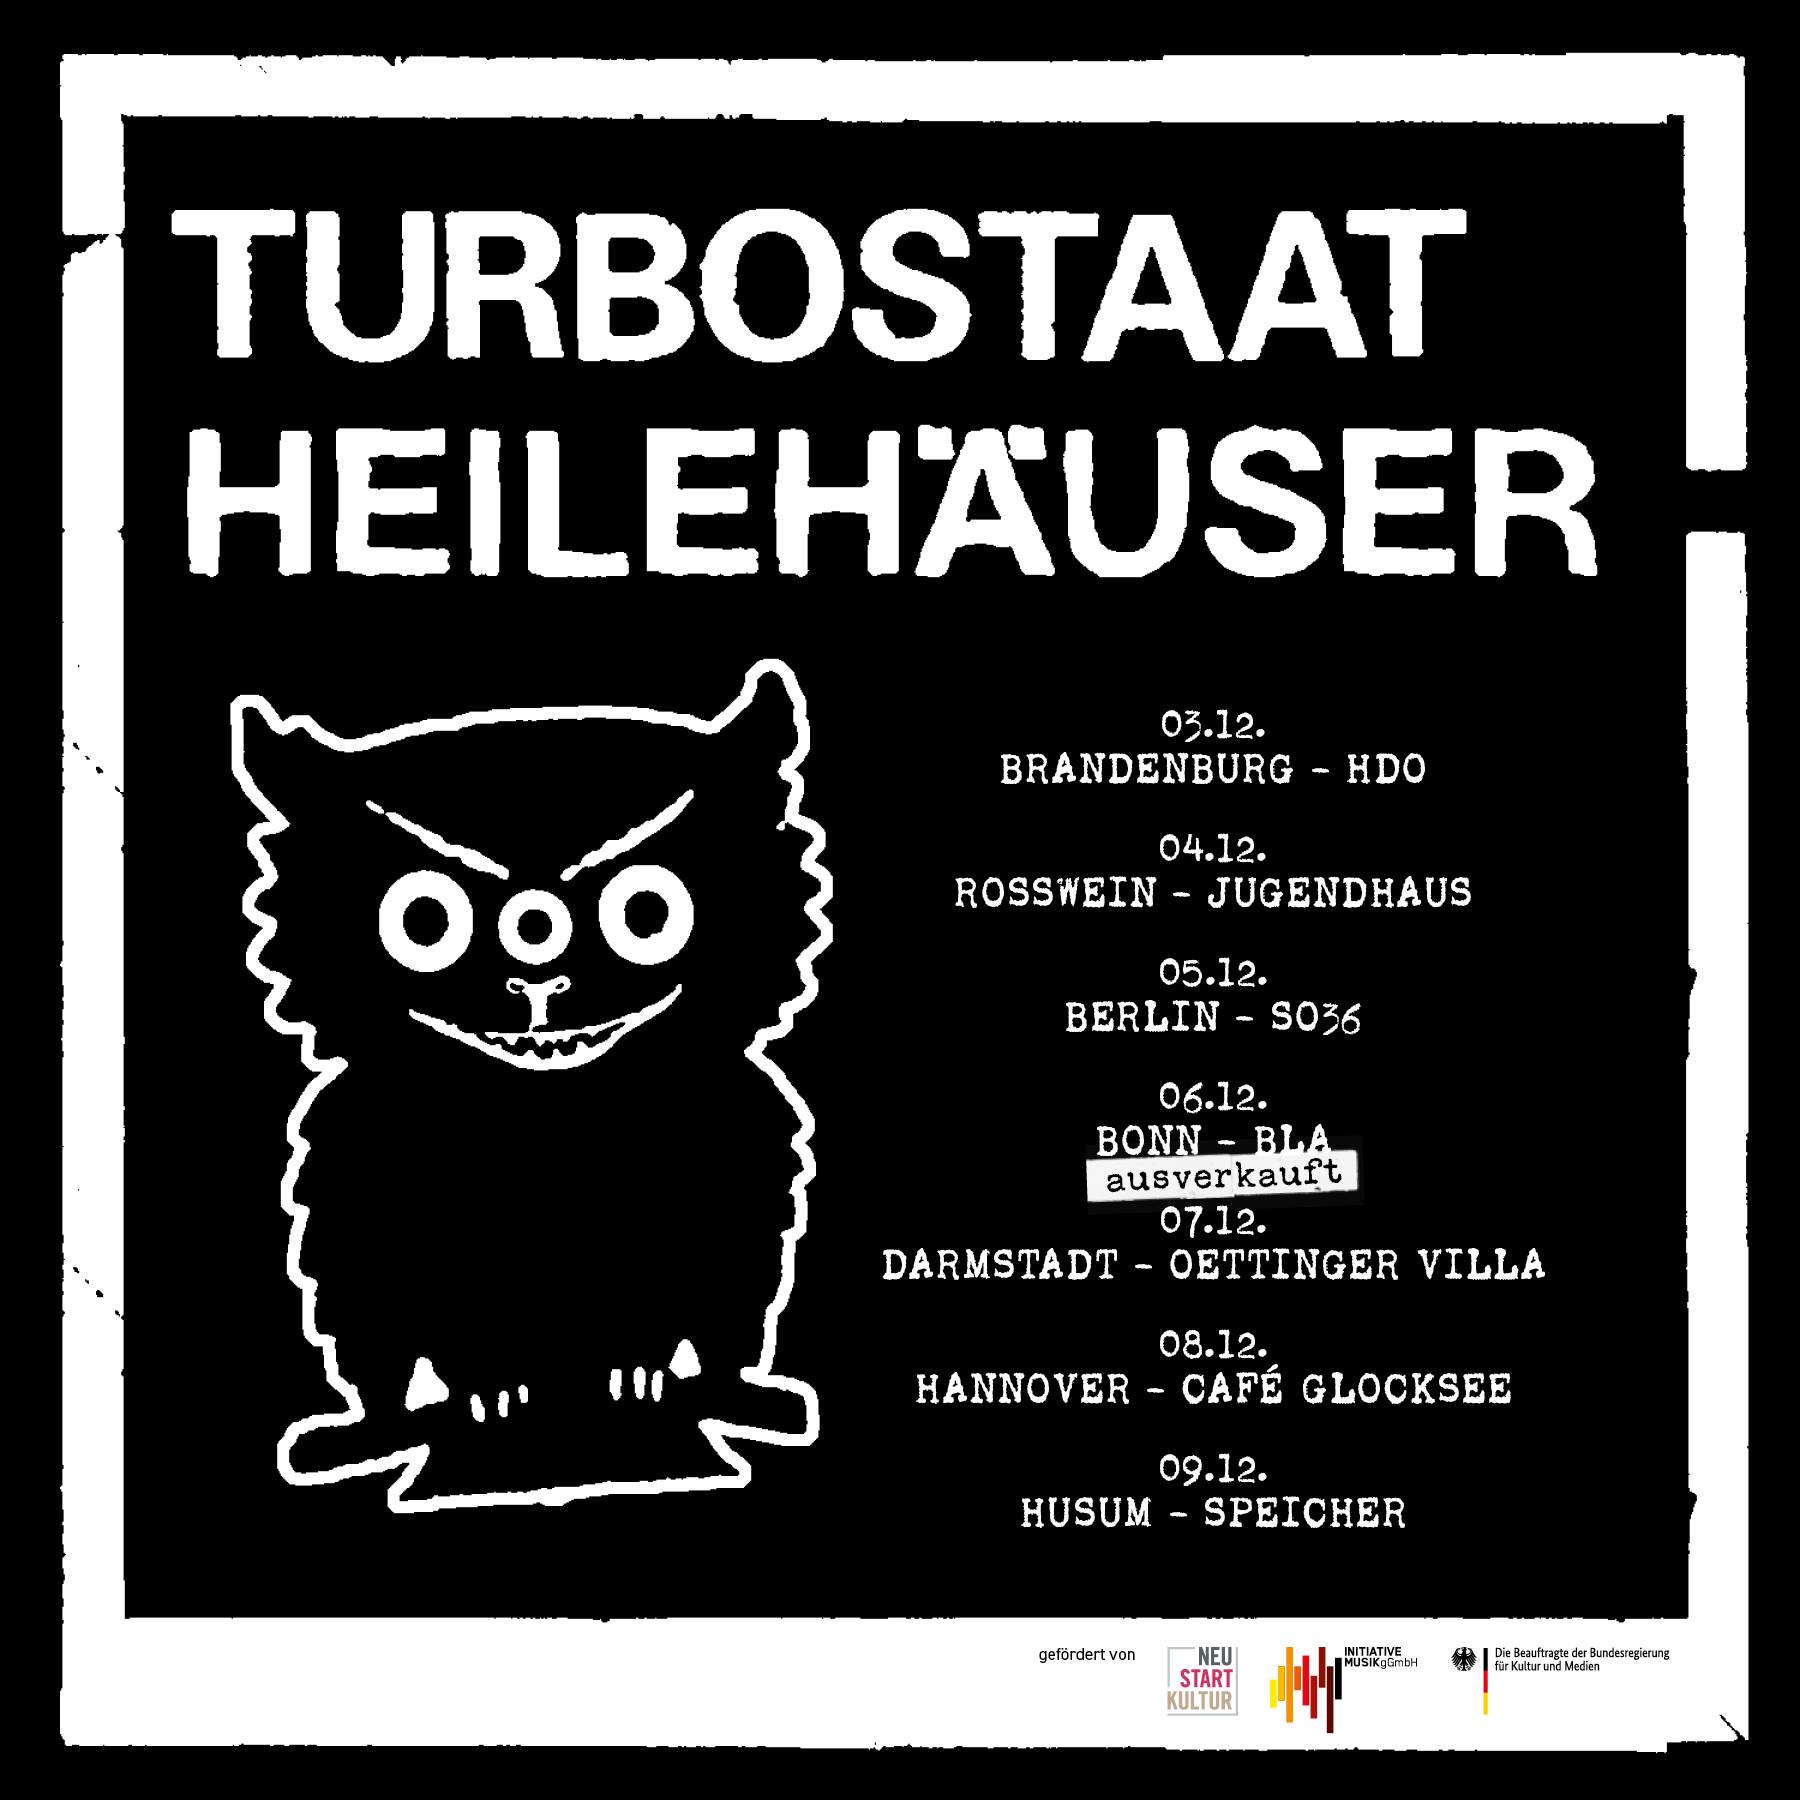 Turbostaat - Heilehäuser Tour 2021